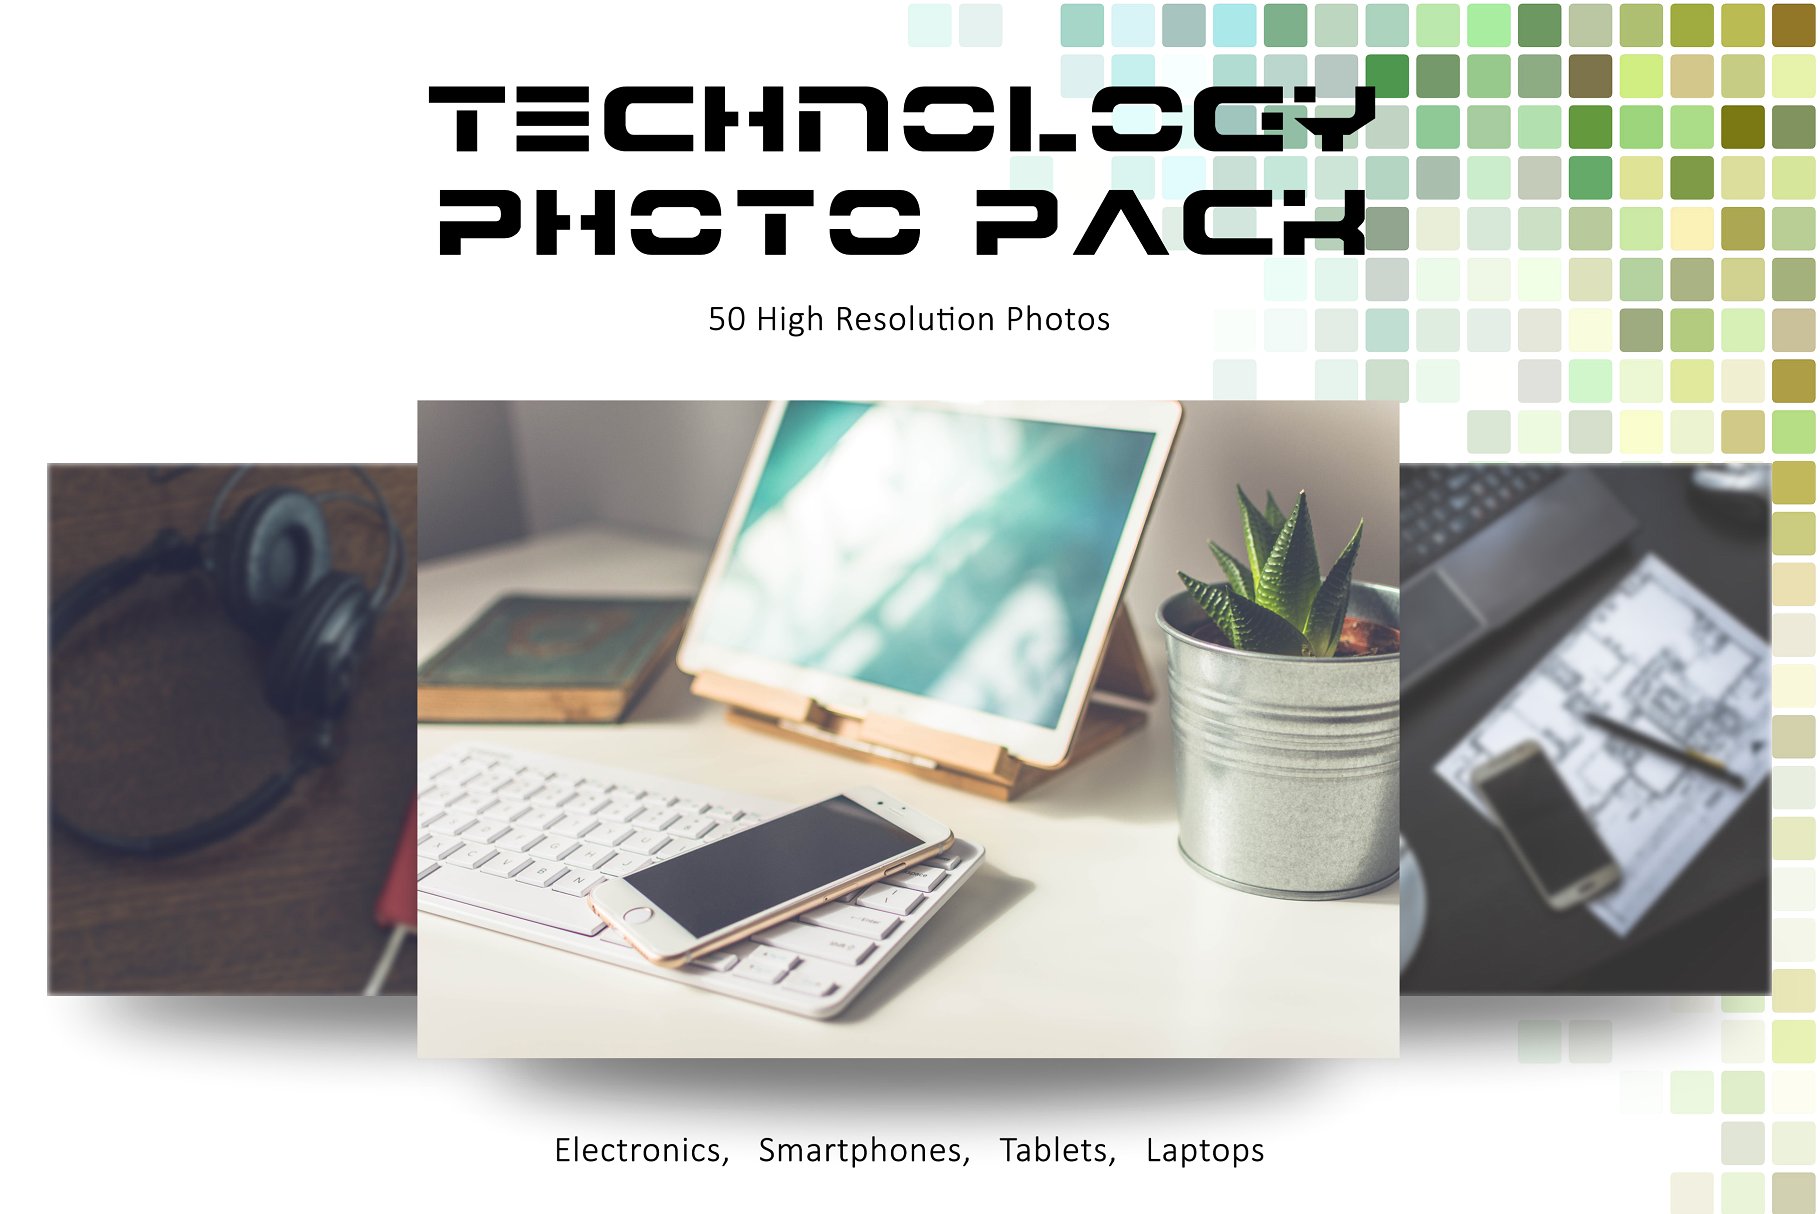 电子科技设备高清照片素材 TECHNOLOGY PHOTO PACK插图